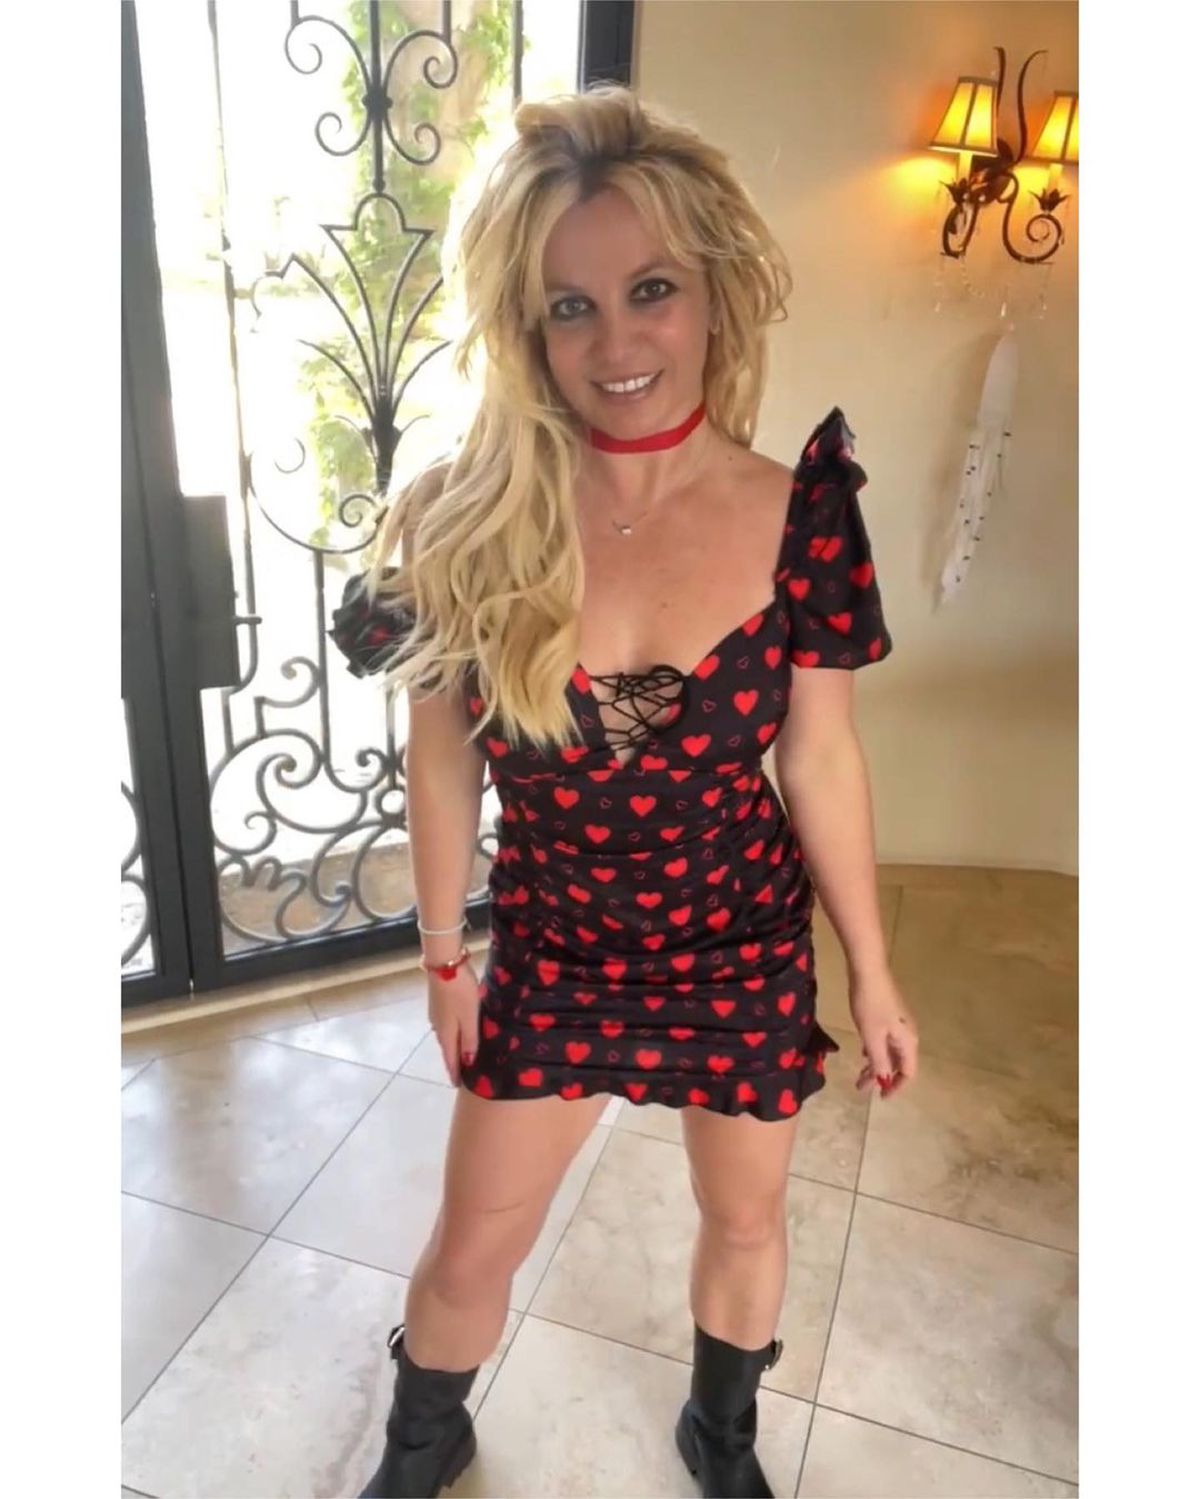 Britney Spears reacționează după incidentul cu Victor Wembanyama: „Am auzit multe prostii! S-a spus că am meritat să fiu lovită”